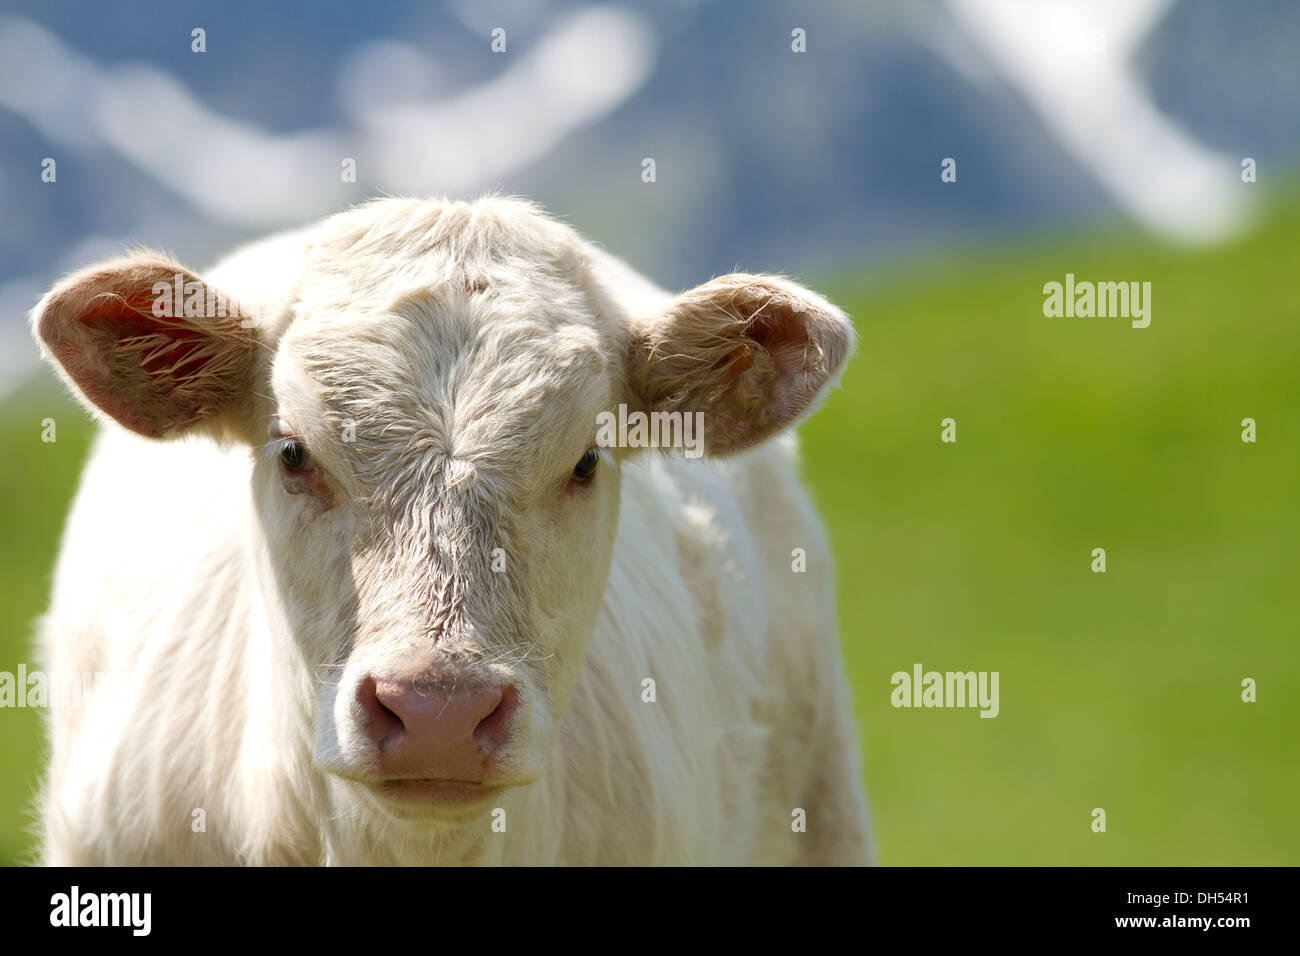 calf in a prairie Stock Photo